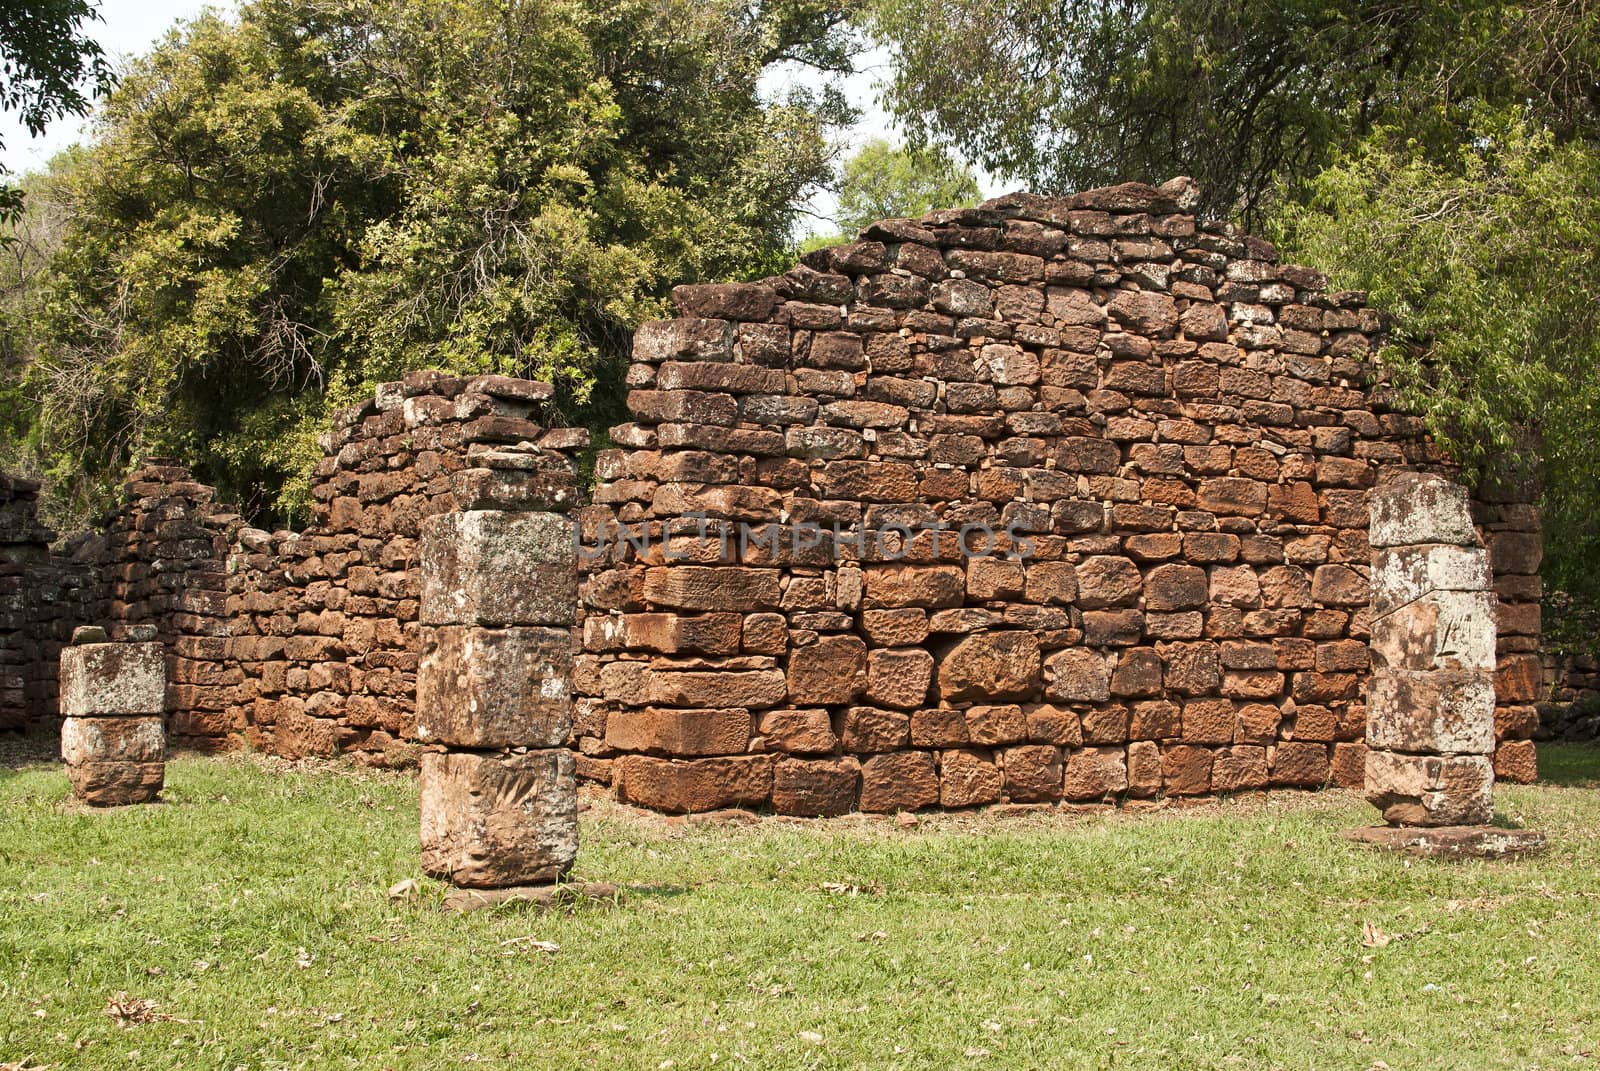 Ruins of San Ignacio, Argentina by lauria